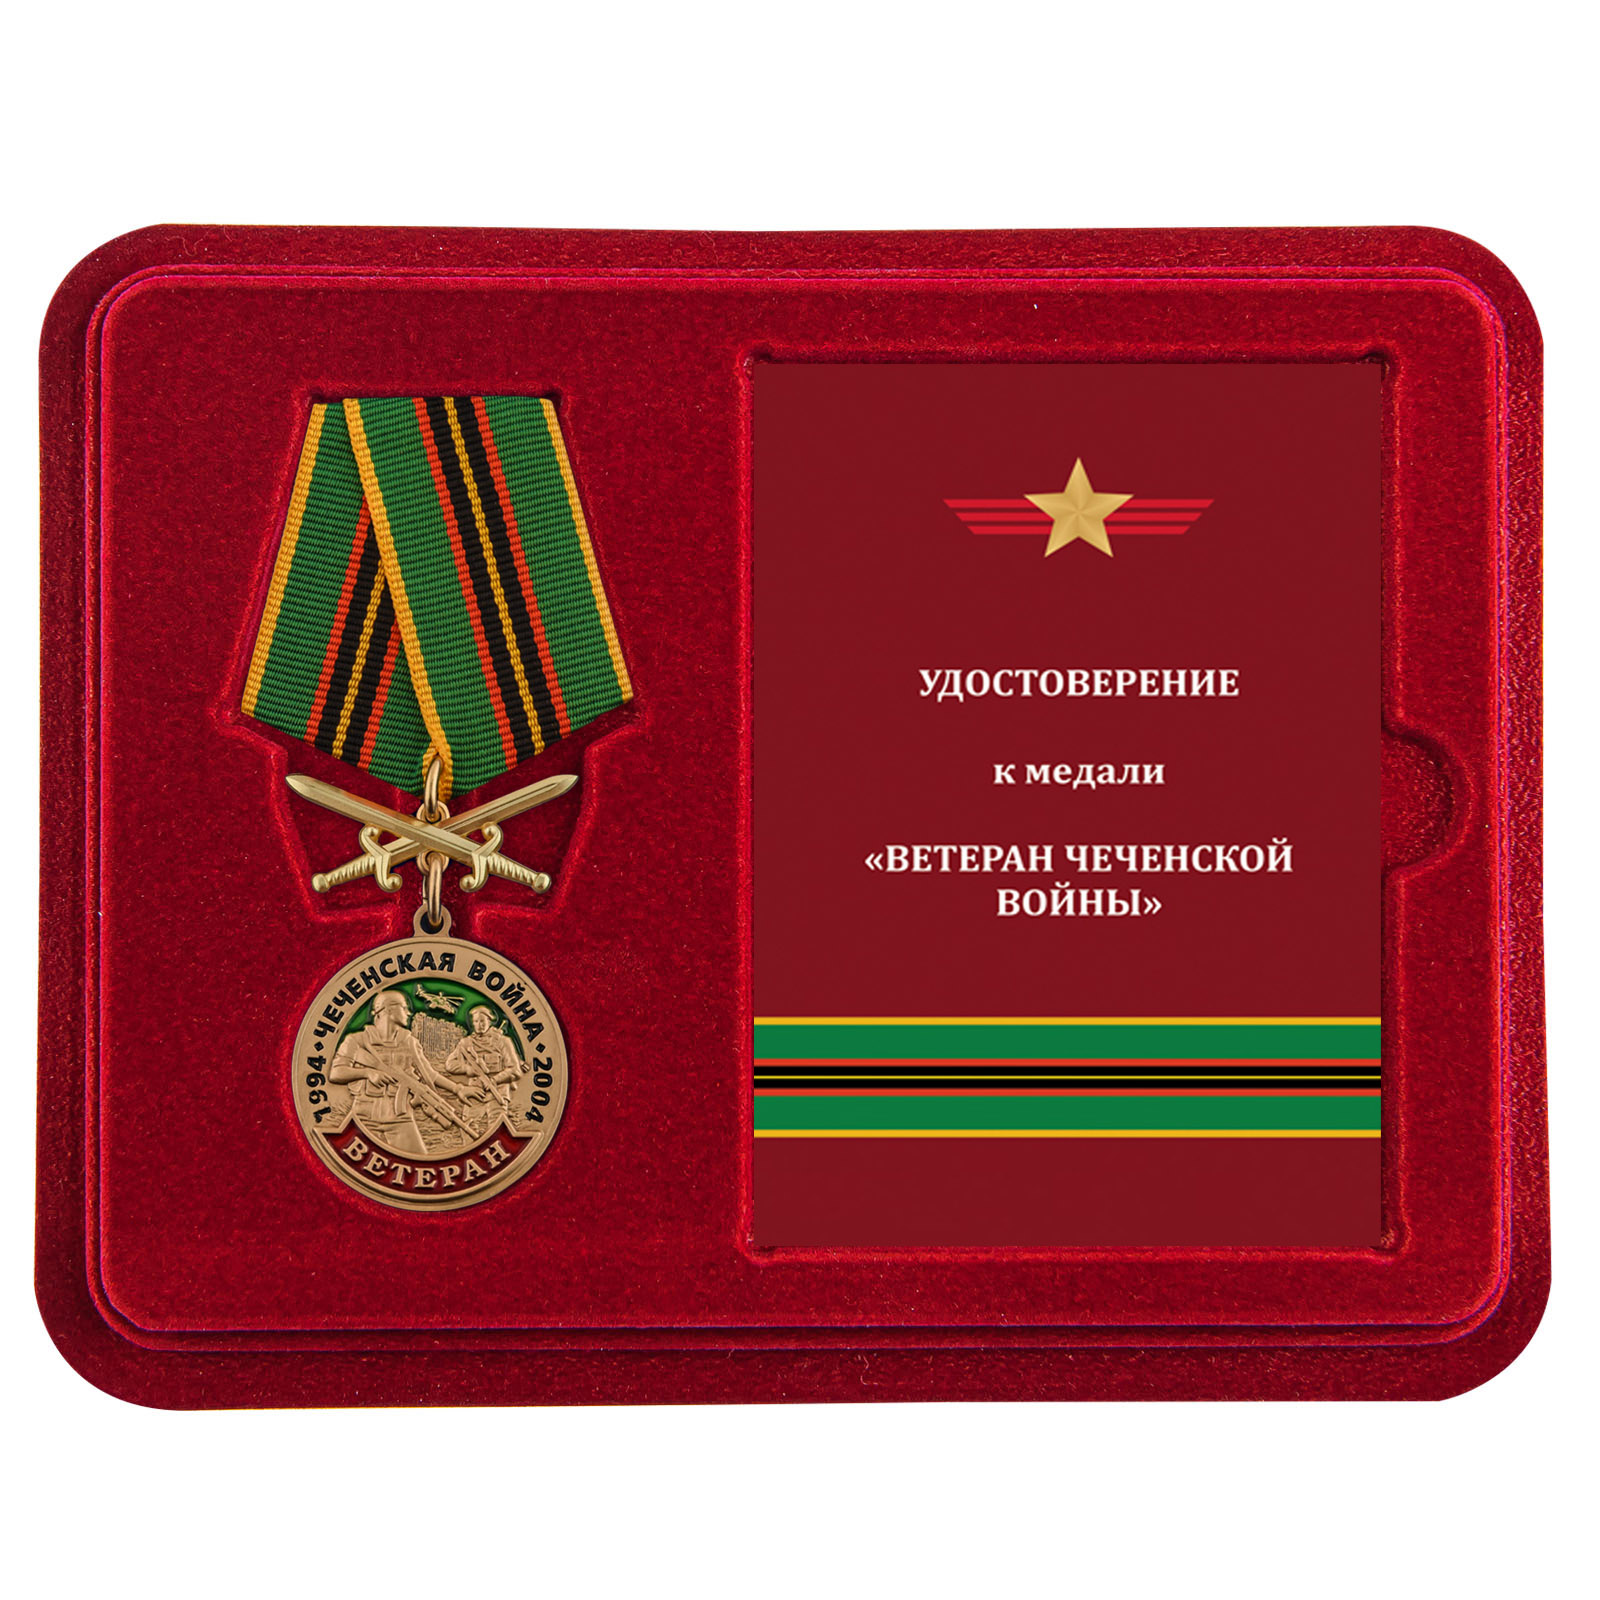 Купить медаль Ветеран Чеченской войны по специальной цене